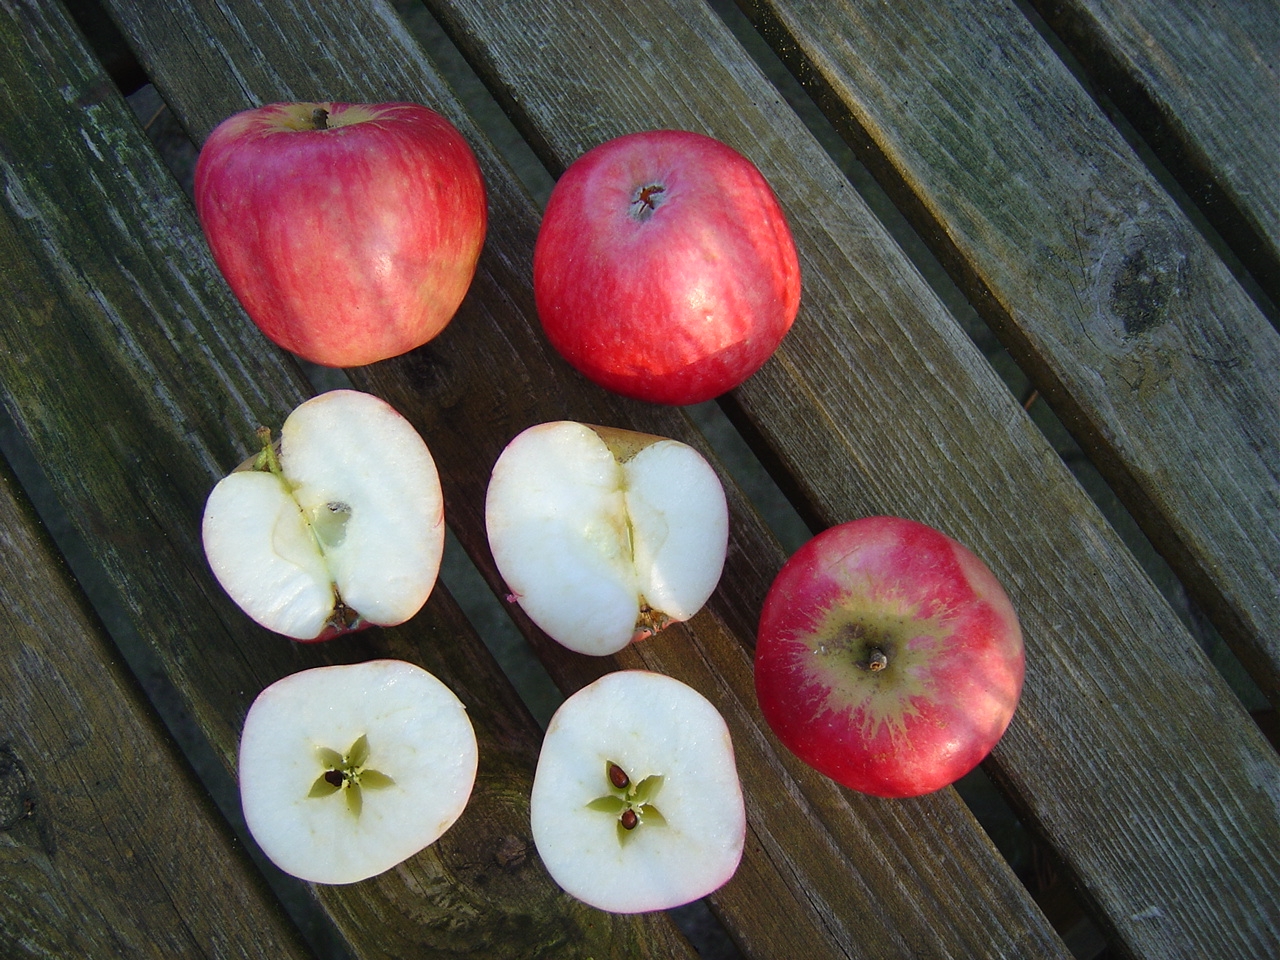 Alte Obstsorten, alte Apfelsorten - Ihr Obstbaum-Shop!  www.alte-obstsorten-online.de - Sommerapfel-Apfelbaum ´Roter Klarapfel´  (Augustapfel) - Apfelsorten direkt aus der Obstbaumschule!